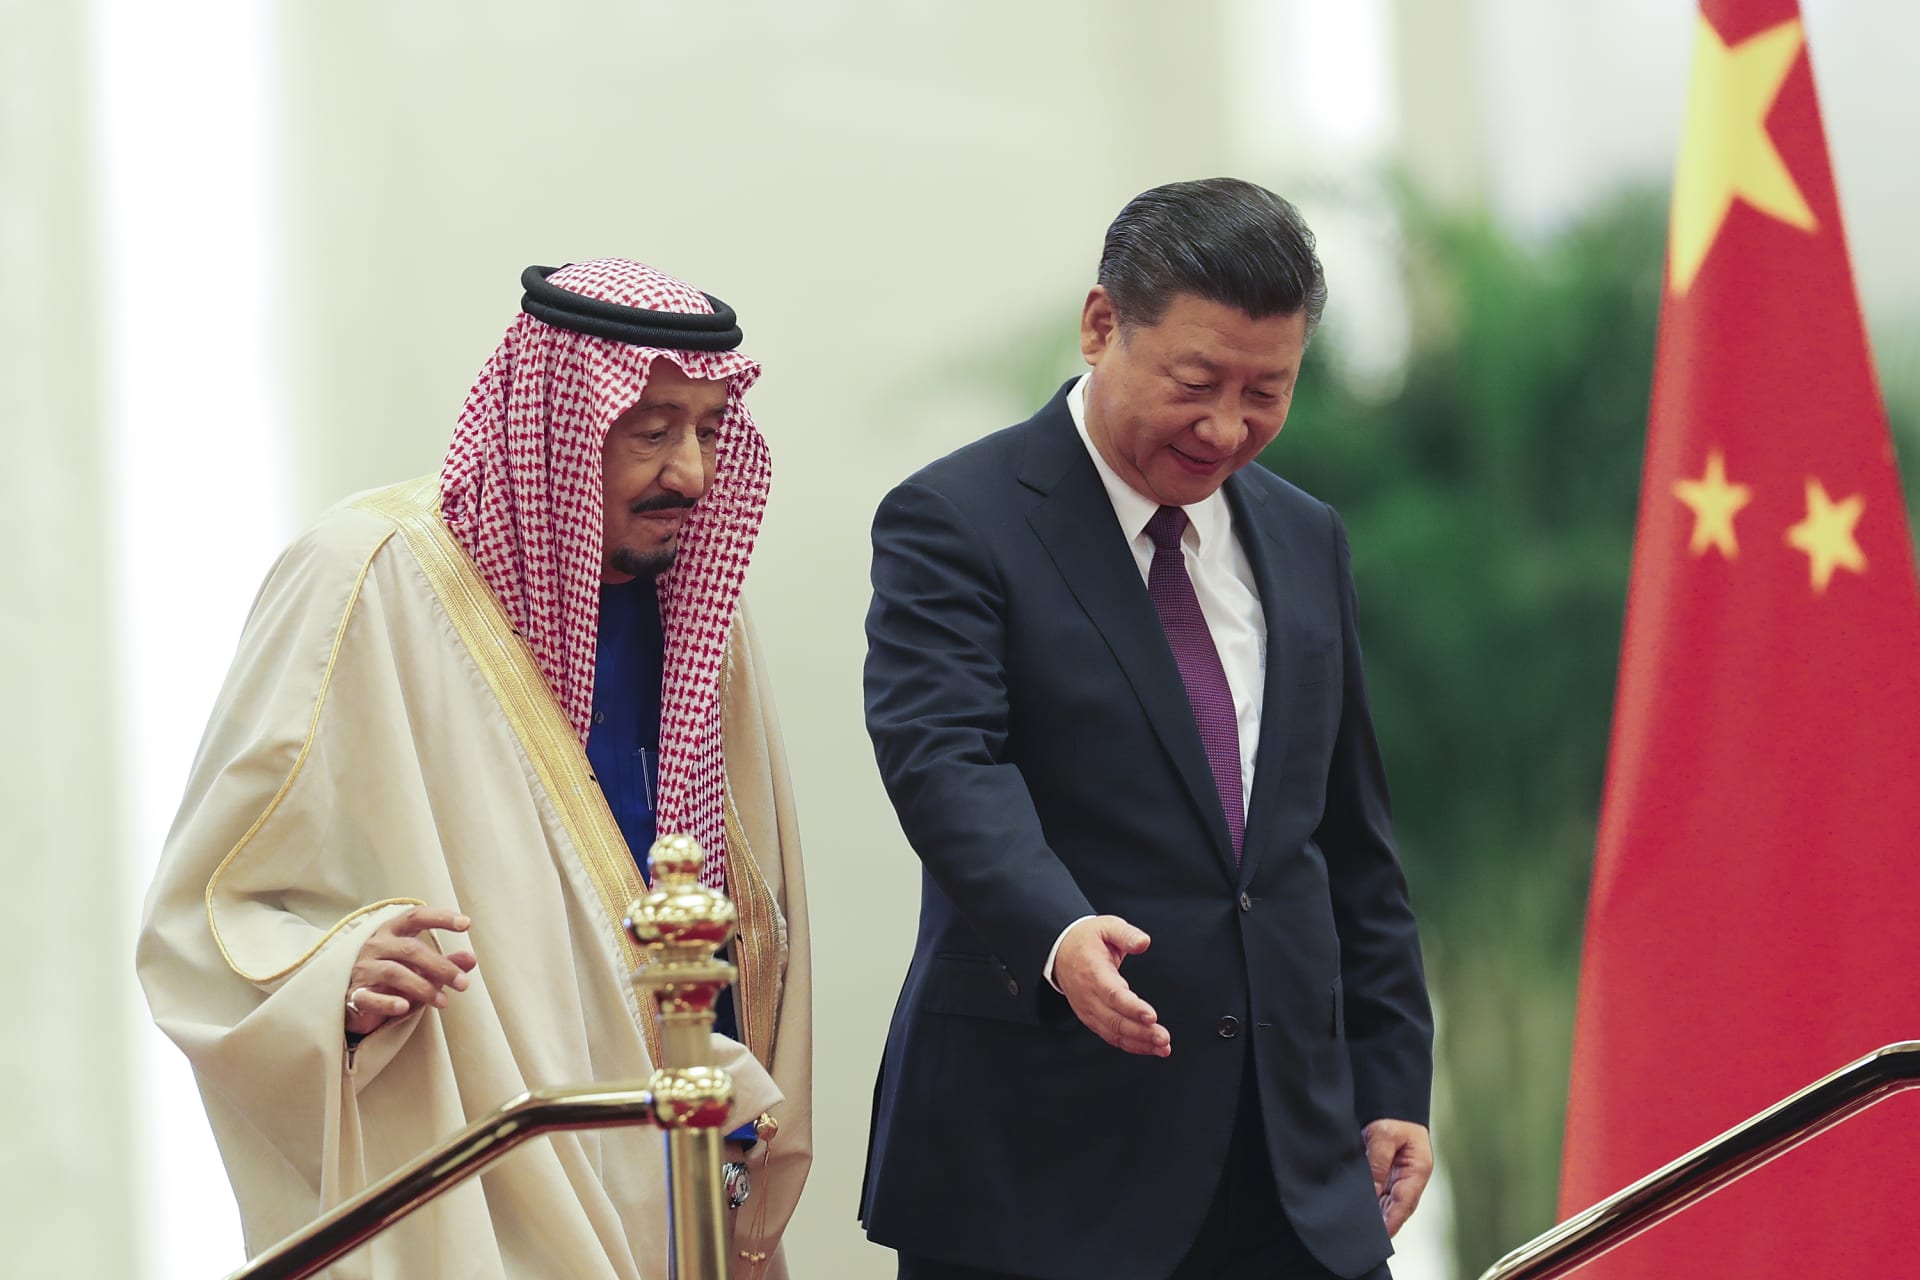 صورة أرشيفية للعاهل السعودي، الملك سلمان بن عبدالعزيز والرئيس الصيني، شي جين بينغ خلال زيارة للصين